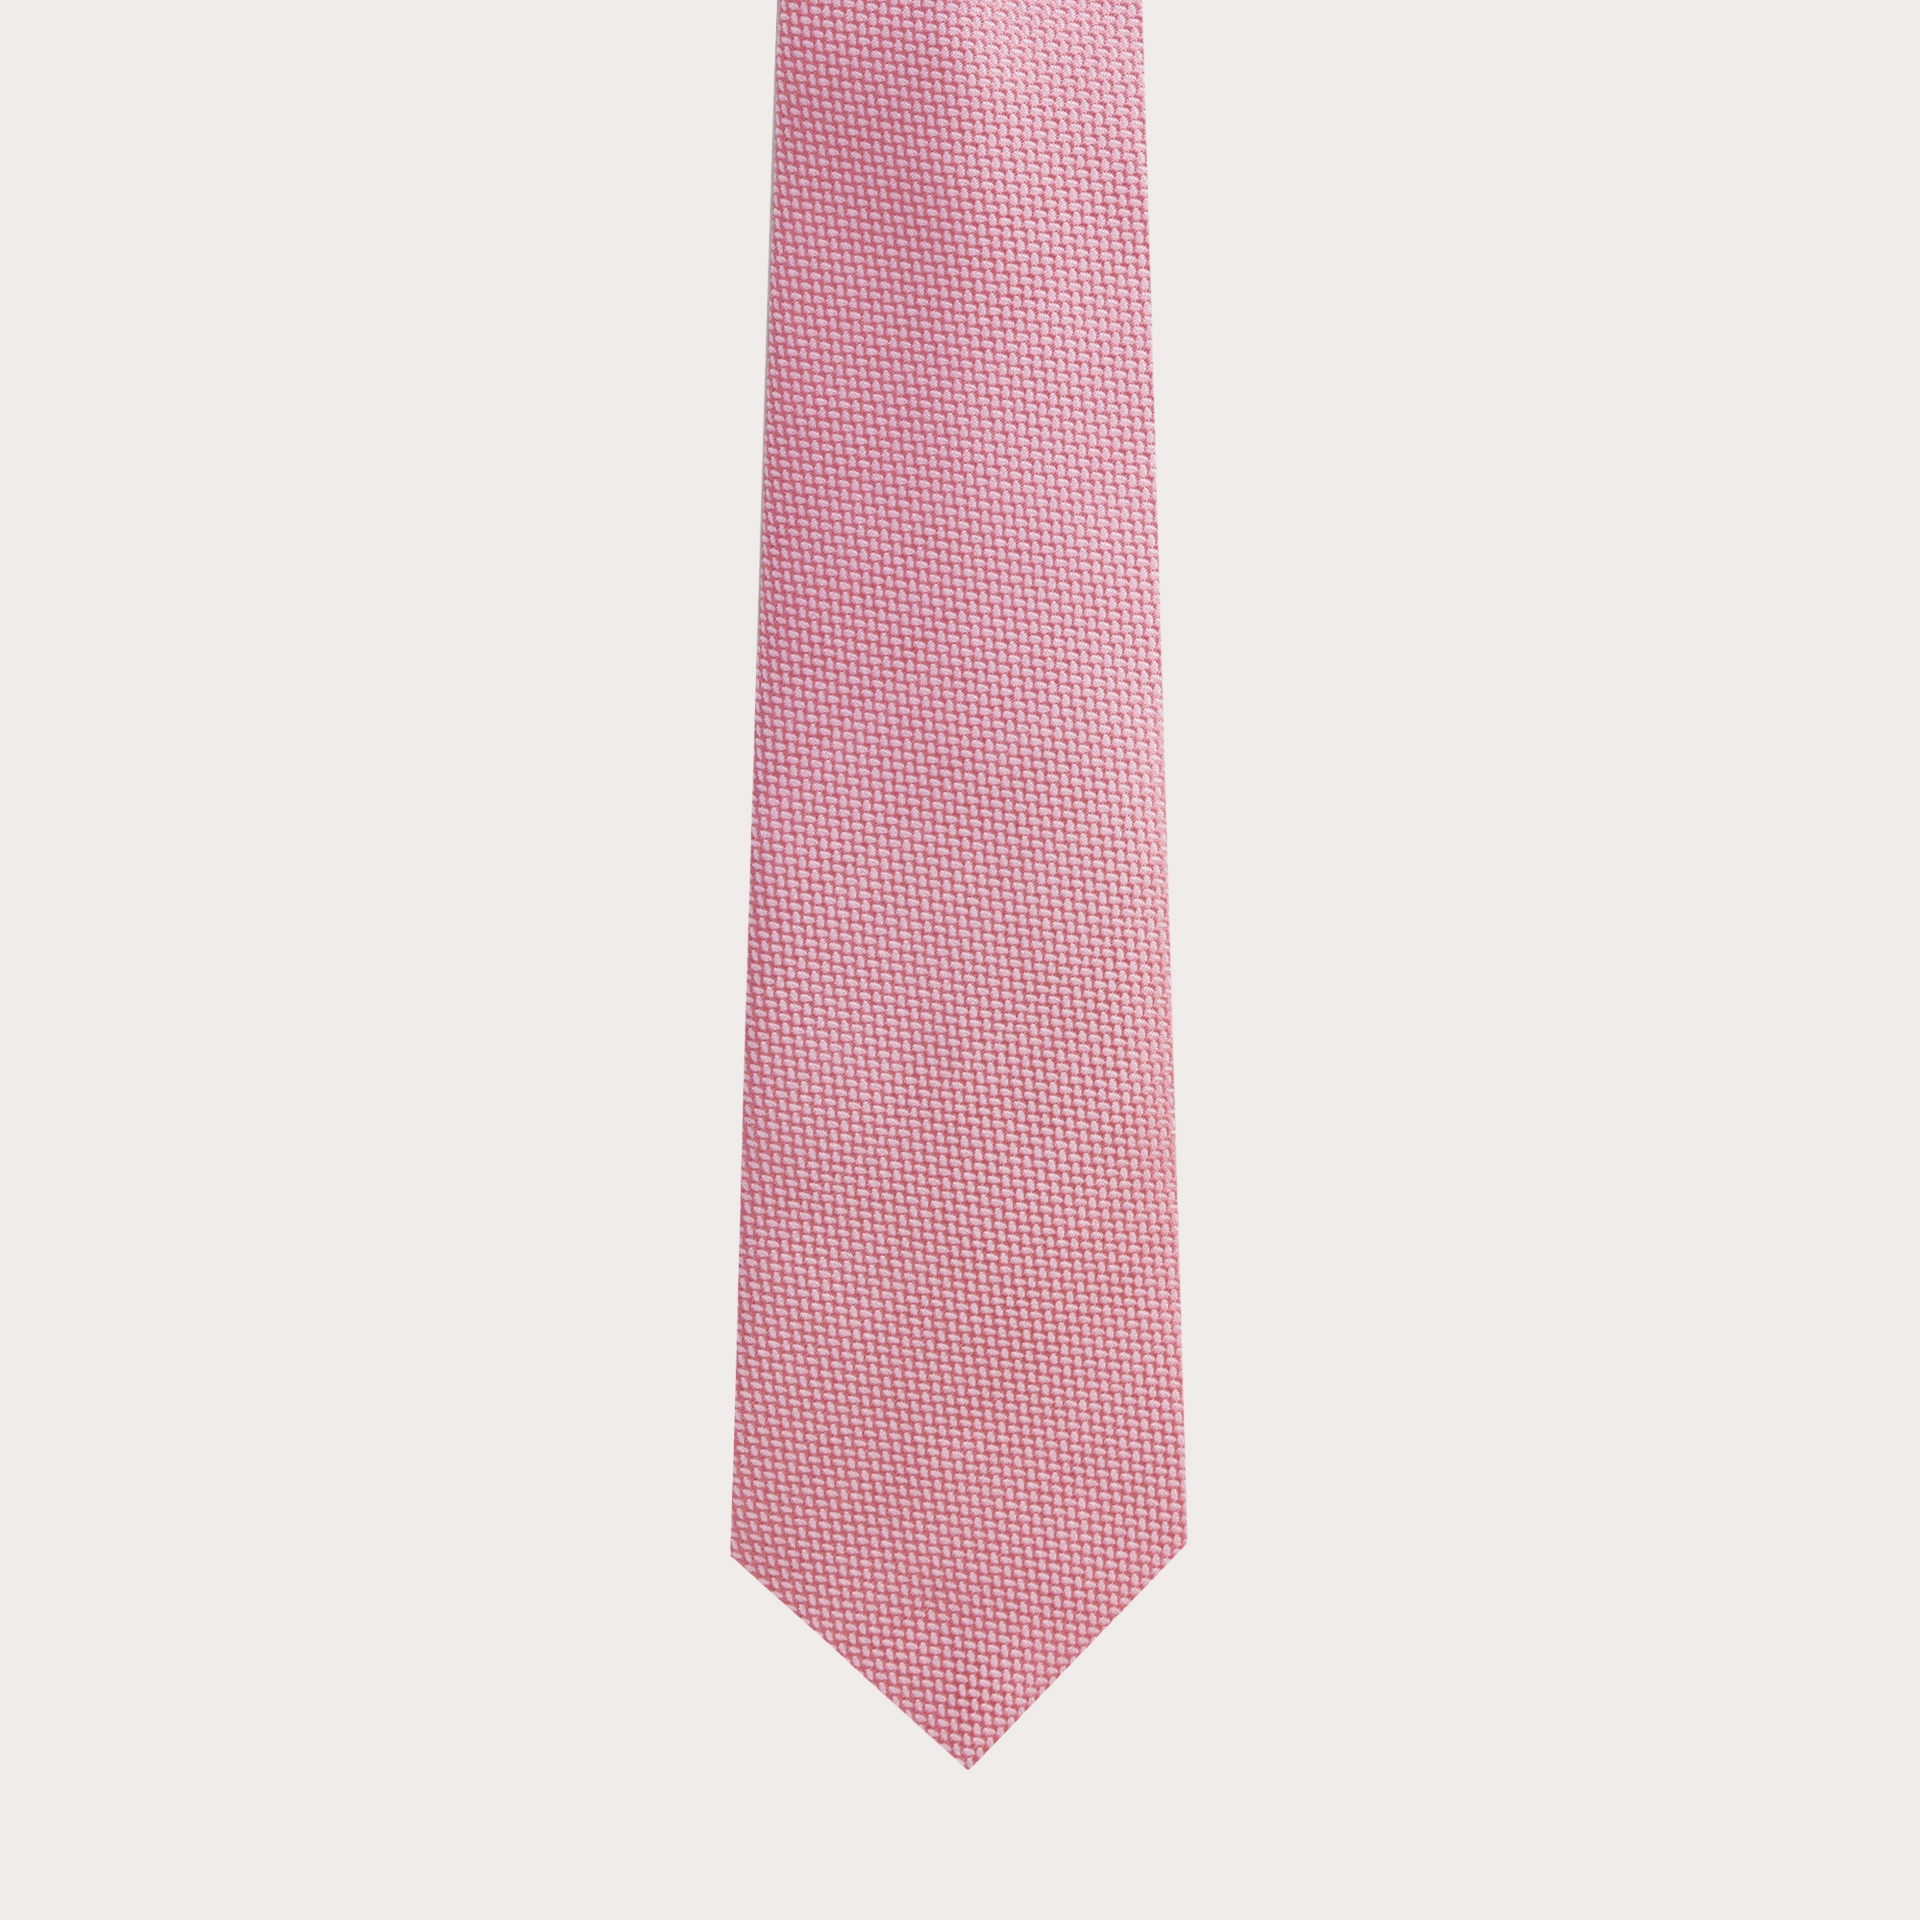 Krawatte aus Jacquard-Seide, rosa